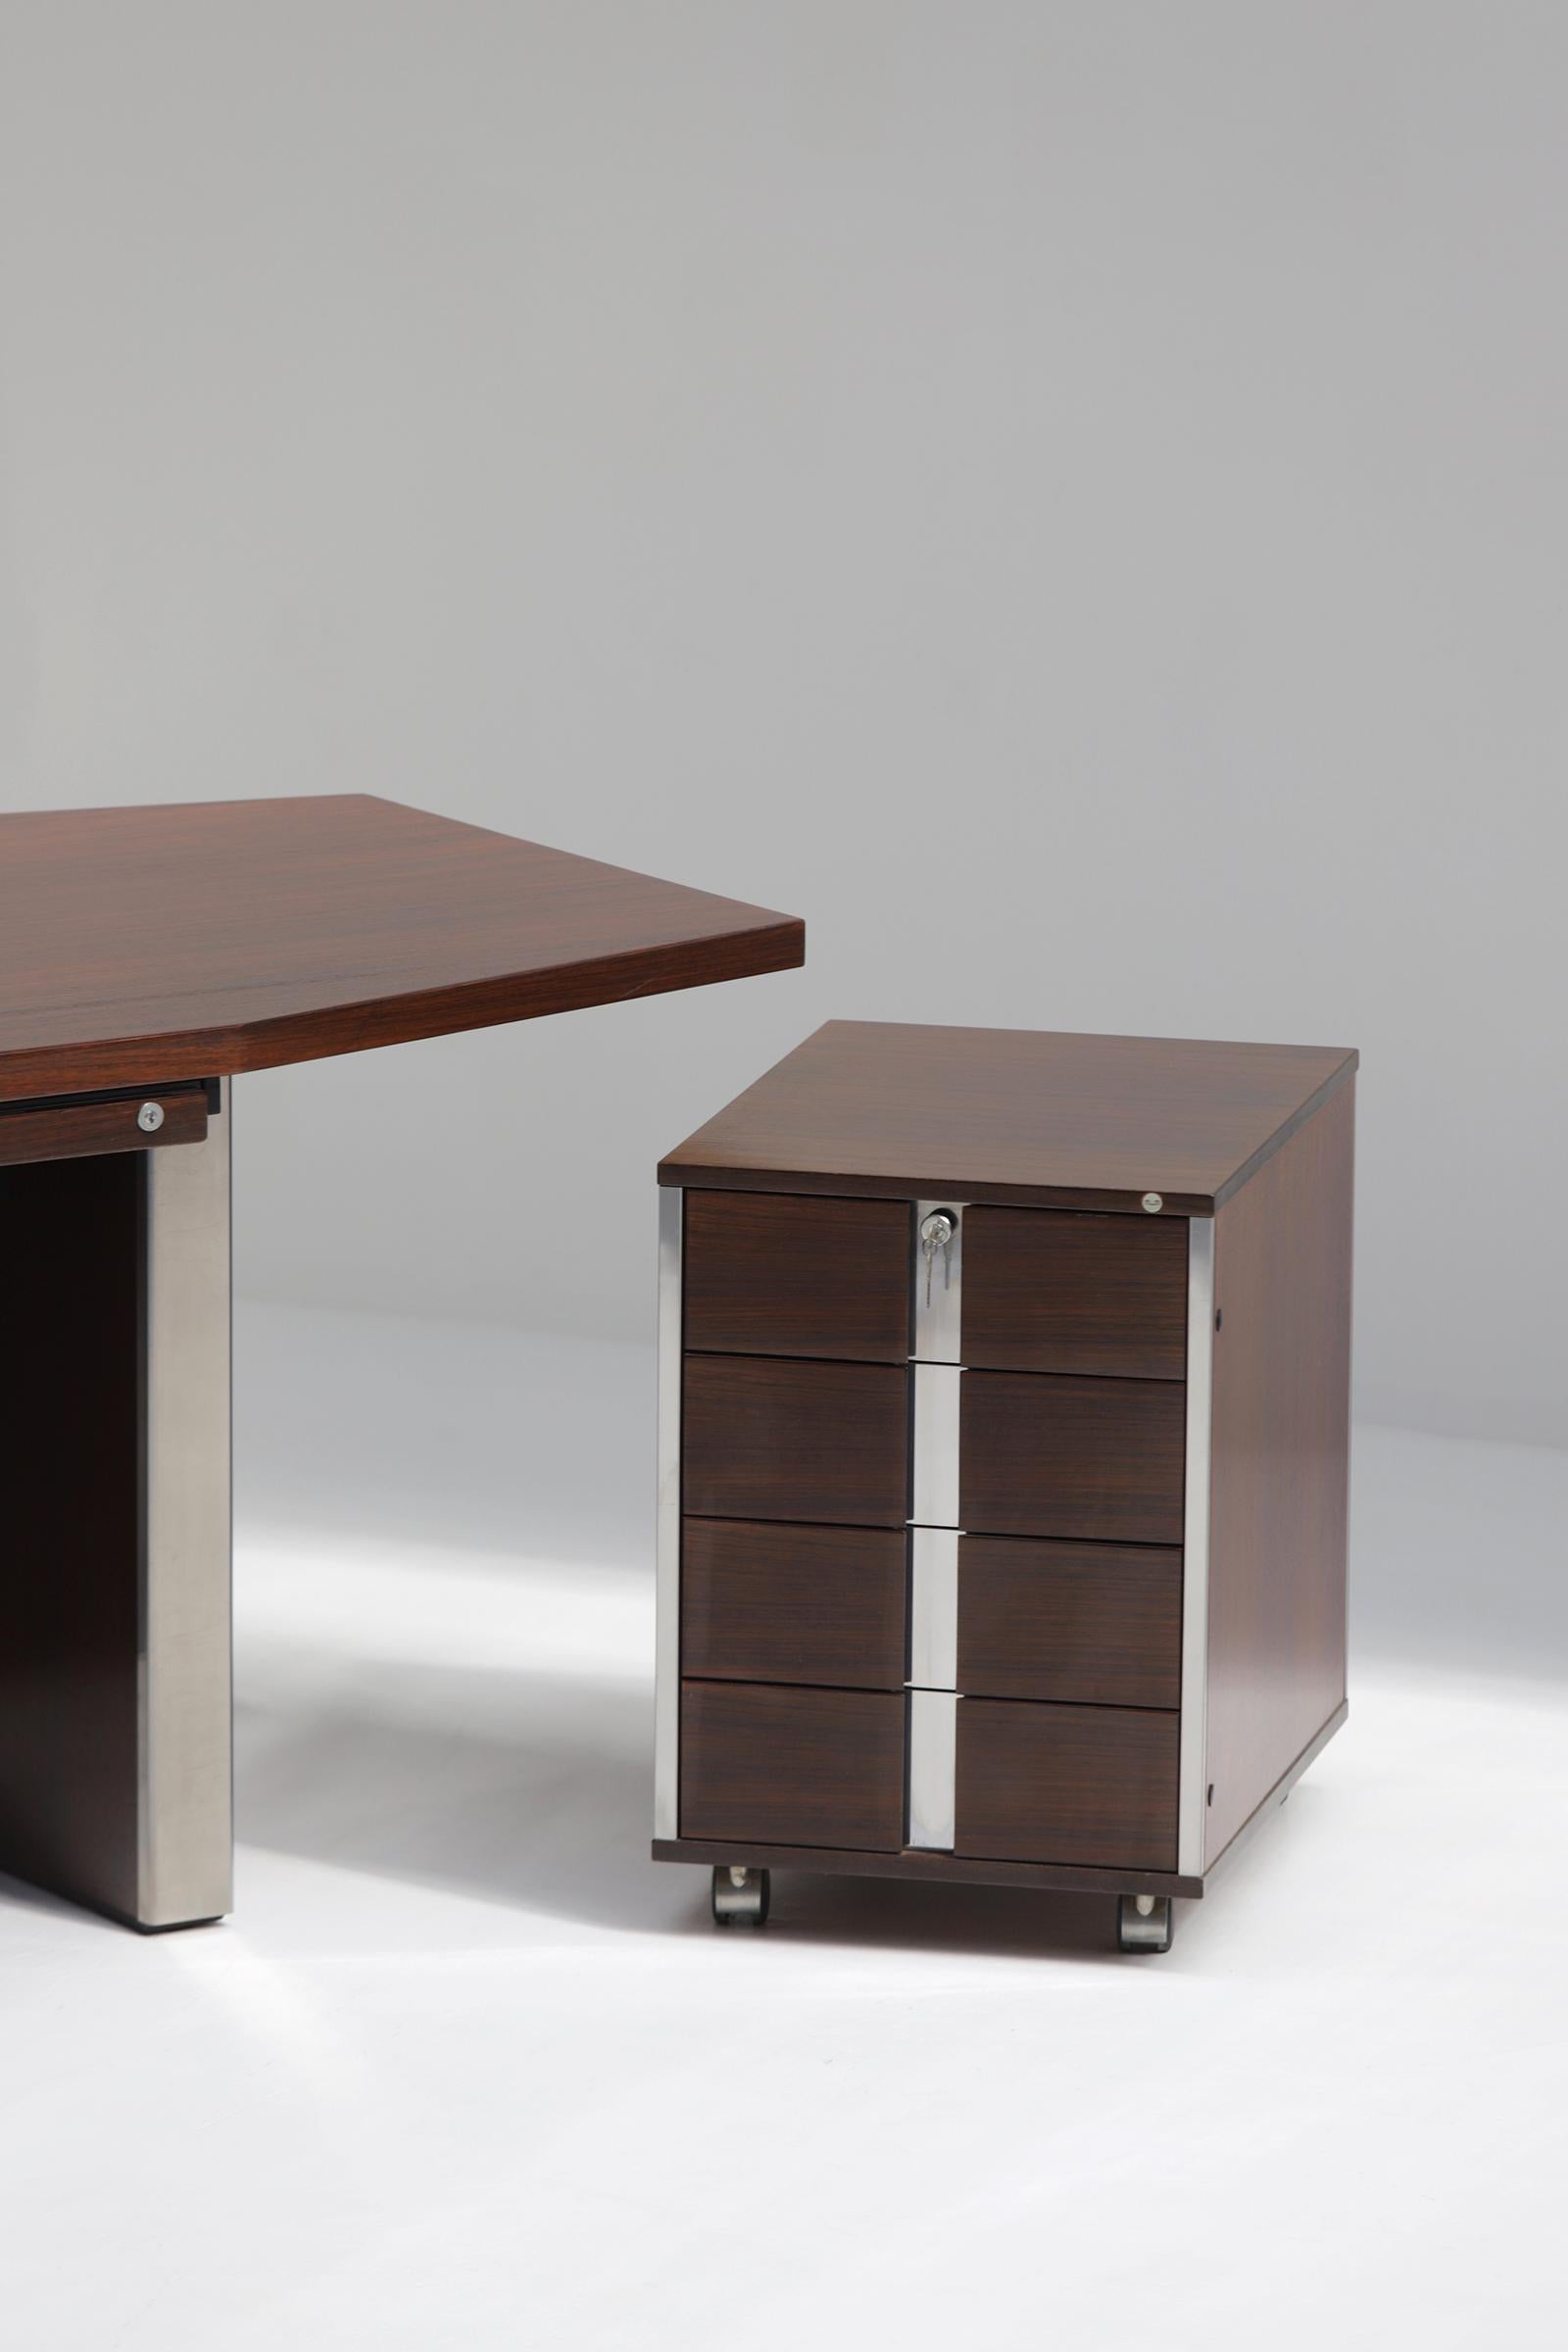 Mid-20th Century Mid-Century Modern Desk by Desk Ennio Fazioli & Ufficio Tecnico for Mim, Italy  For Sale